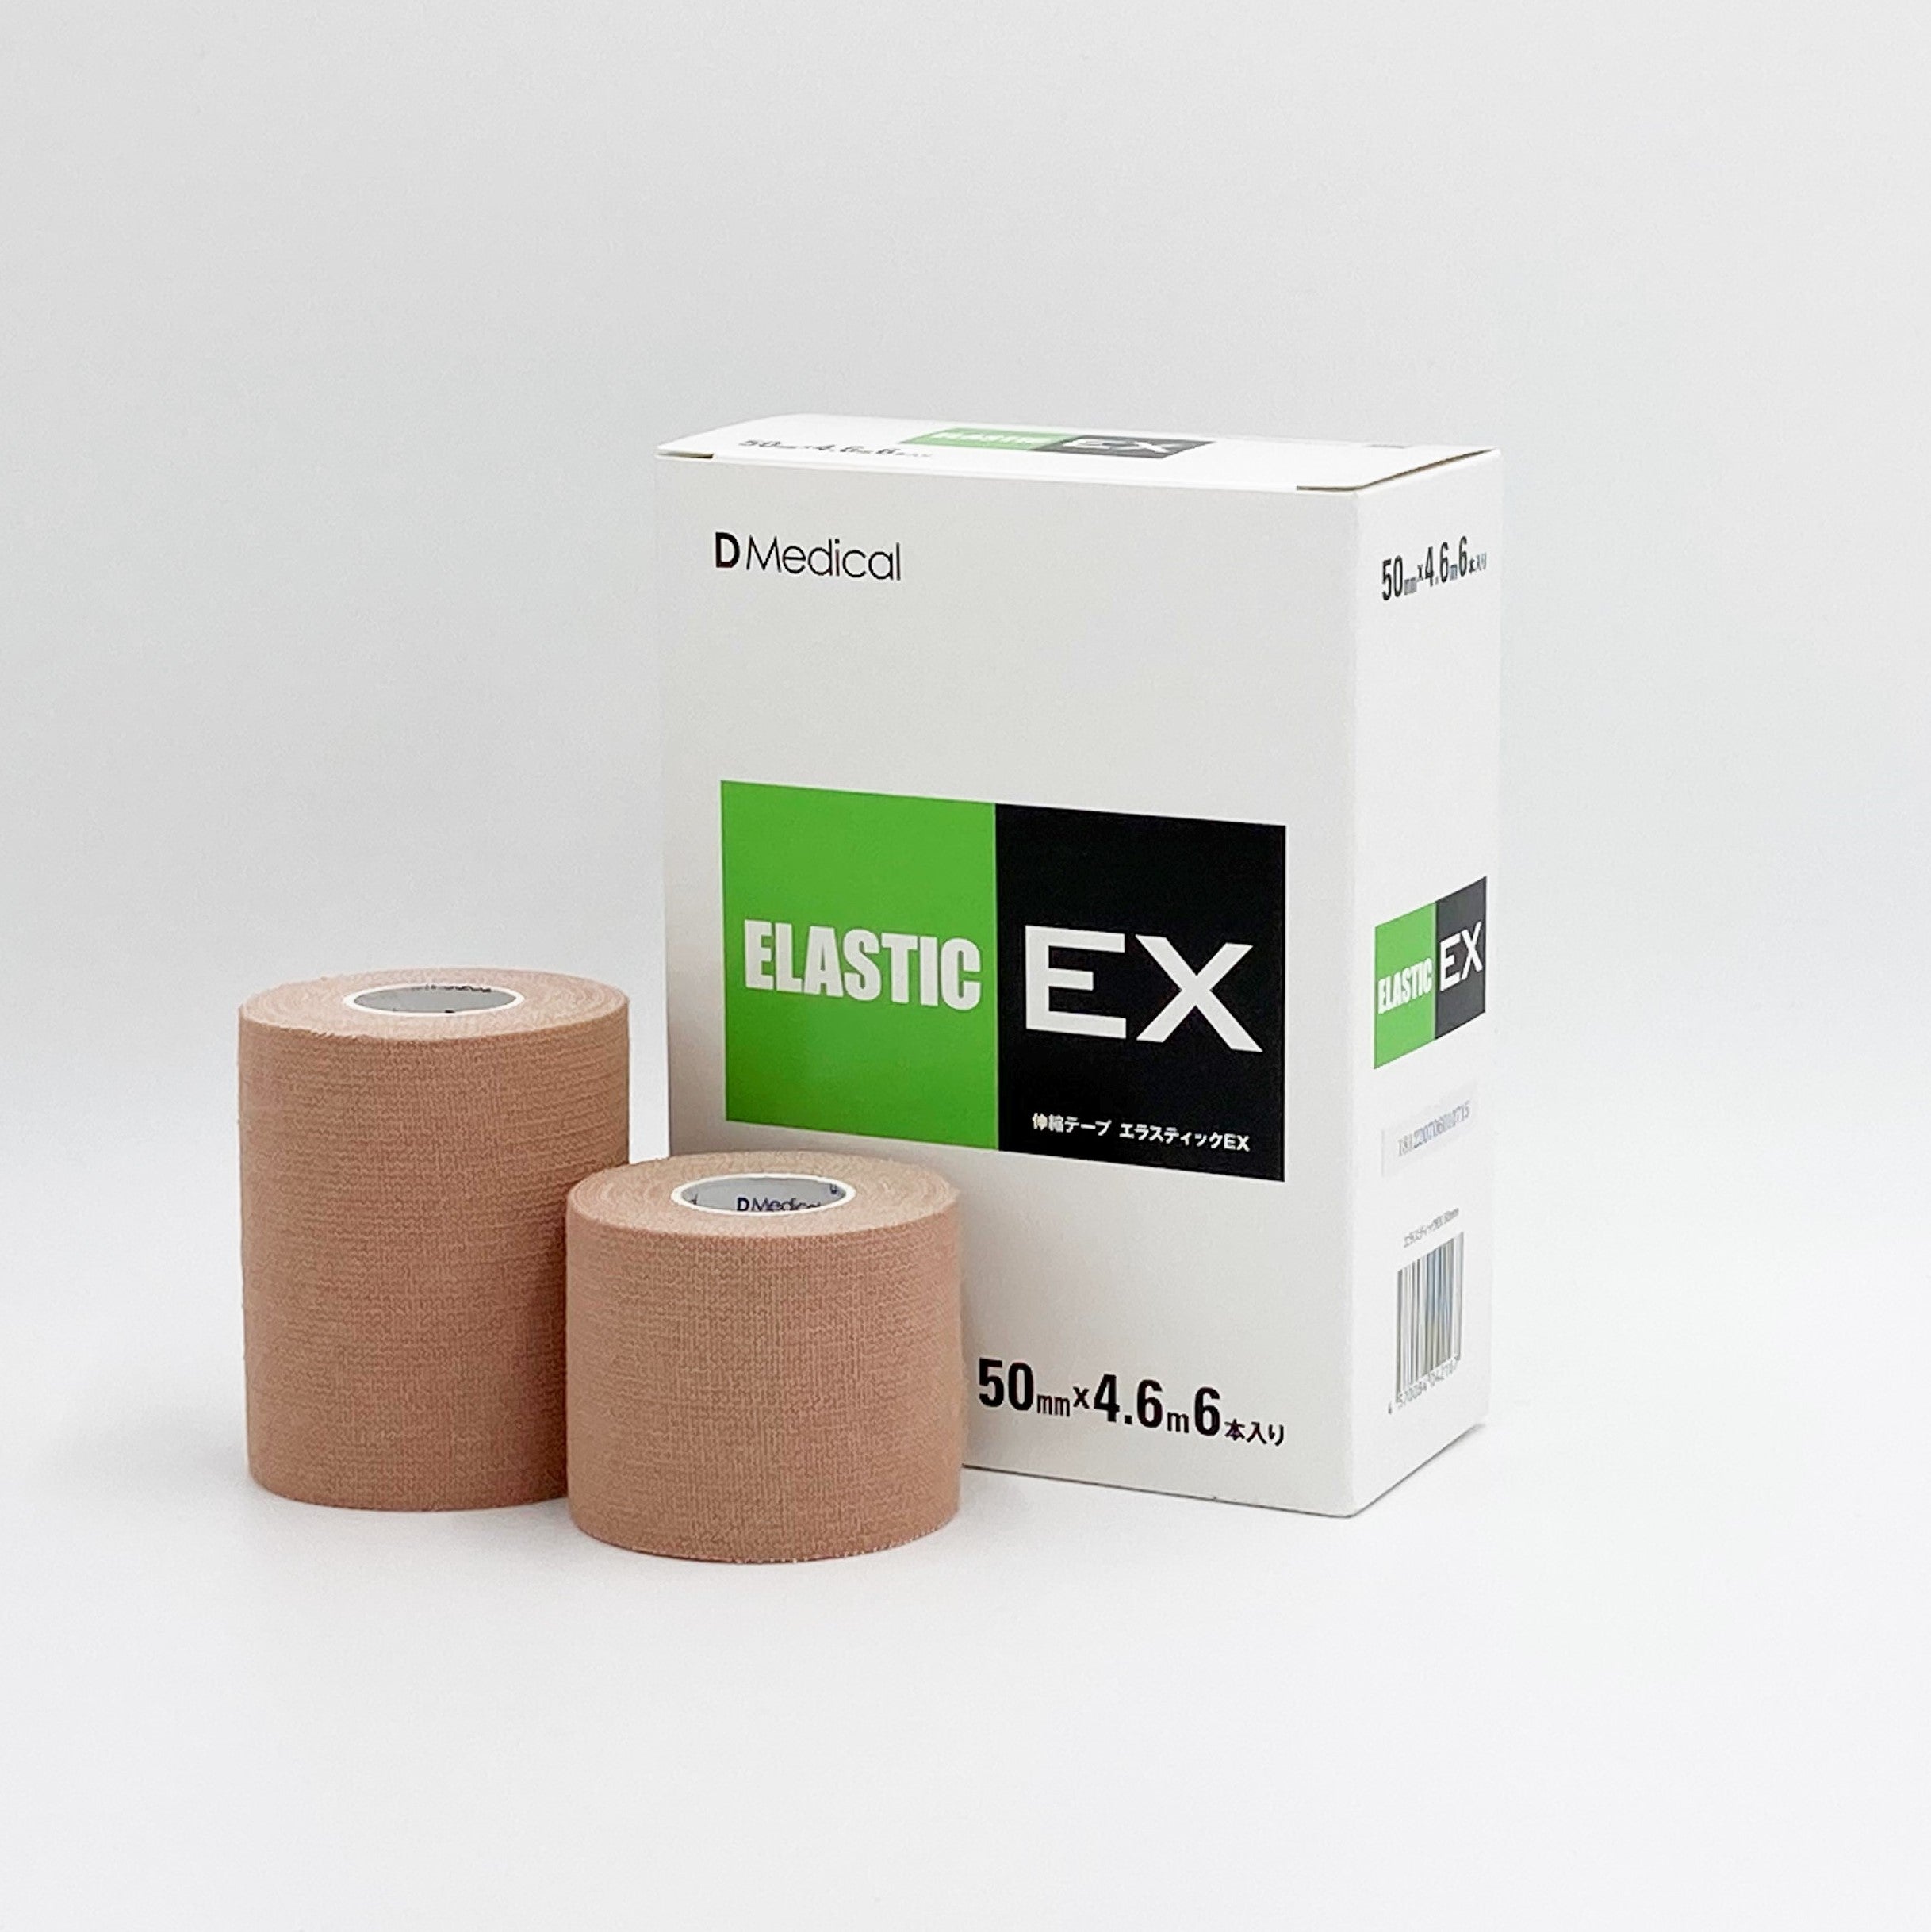 エラスティックEX – テーピングの購入はDMedical公式通販